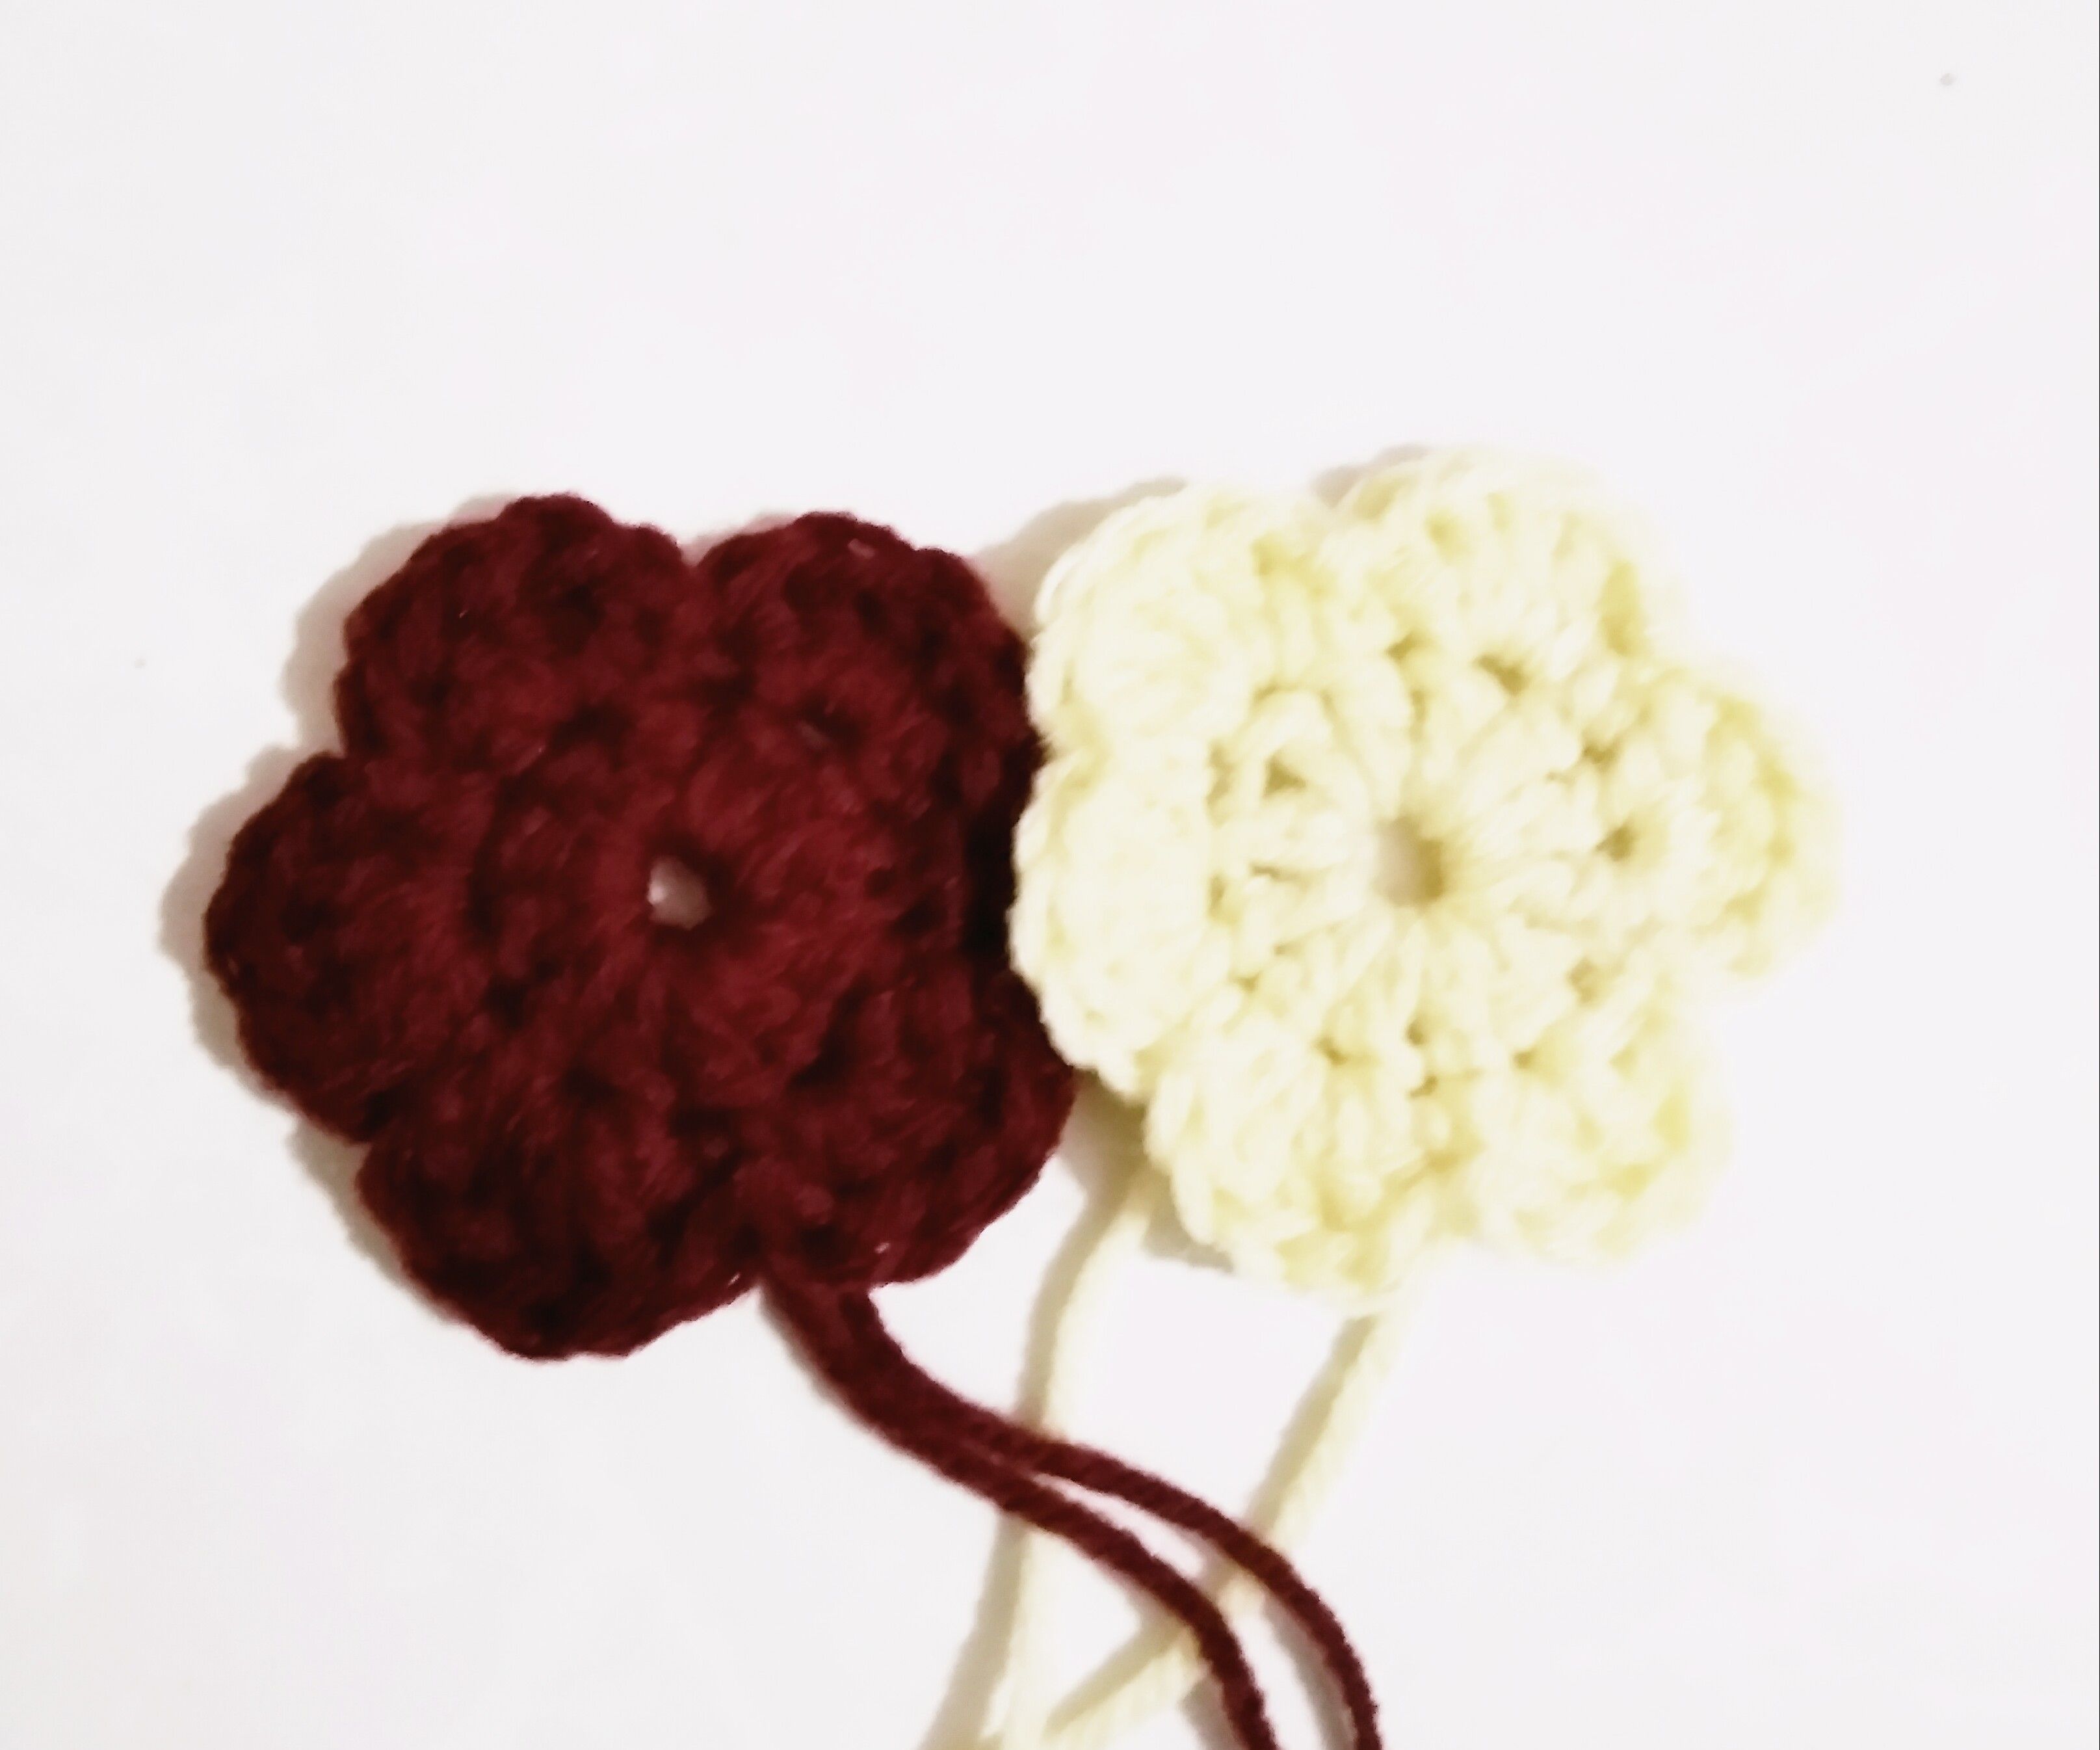 Crochet Flower 